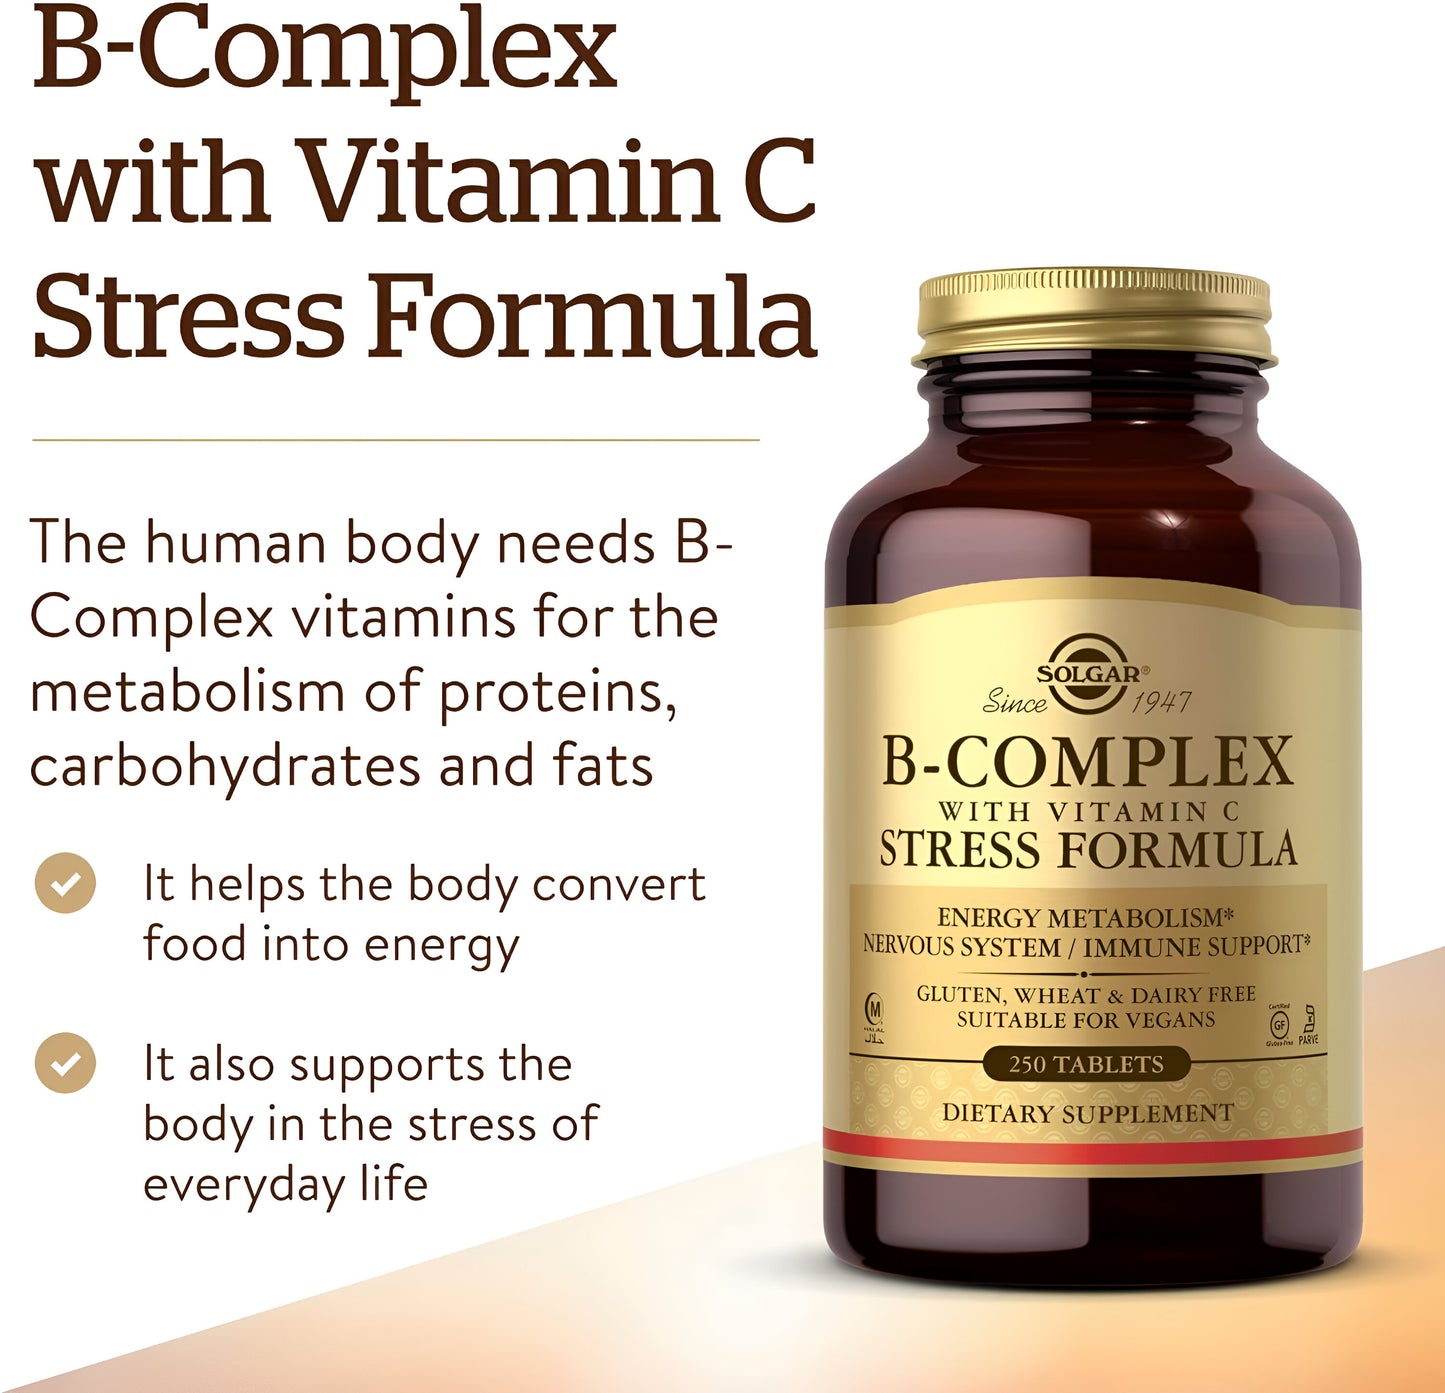 Solgar B-Complex con fórmula de estrés de vitamina C, 250 comprimidos